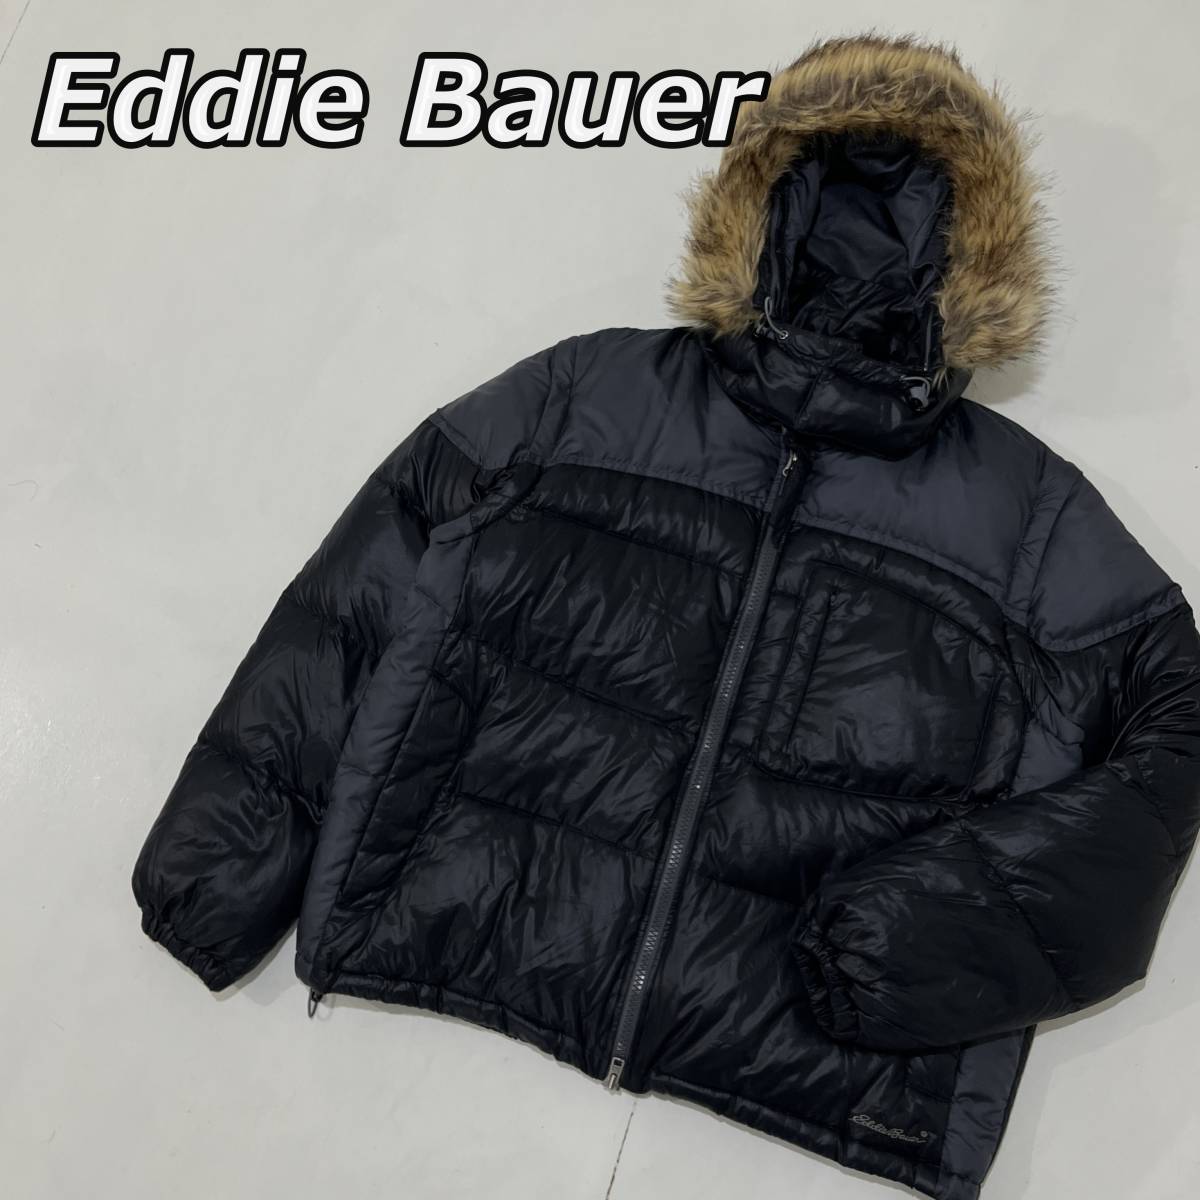 【Eddie Bauer】エディーバウアー ナイロン ダウンジャケット フードファー 2WAY ダウンベストにも 黒 灰色 ブラック グレー 0308858